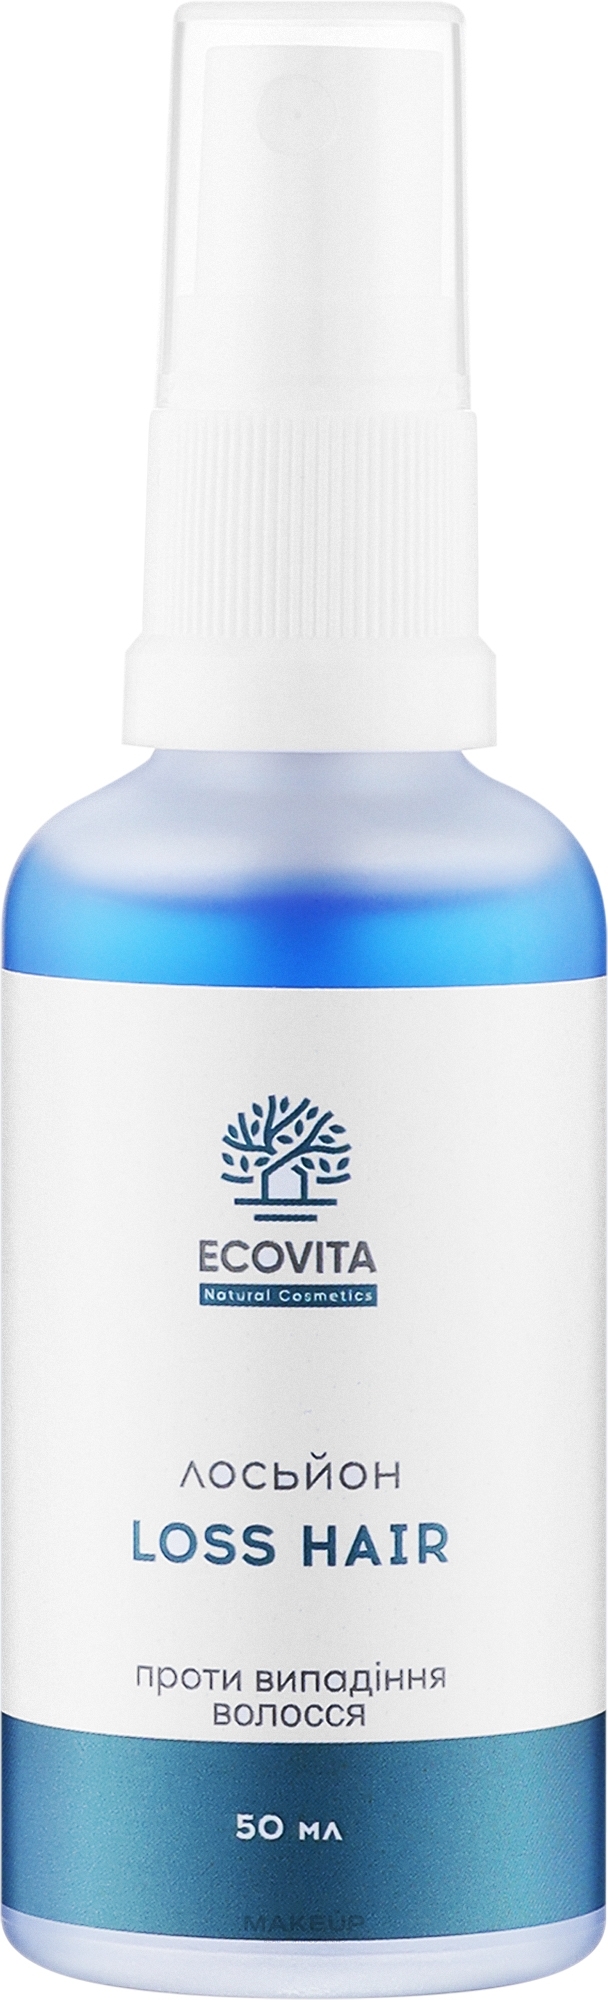 Лосьйон проти випадіння волосся - Ecovita Natural Cosmetics Loss Hair — фото 50ml